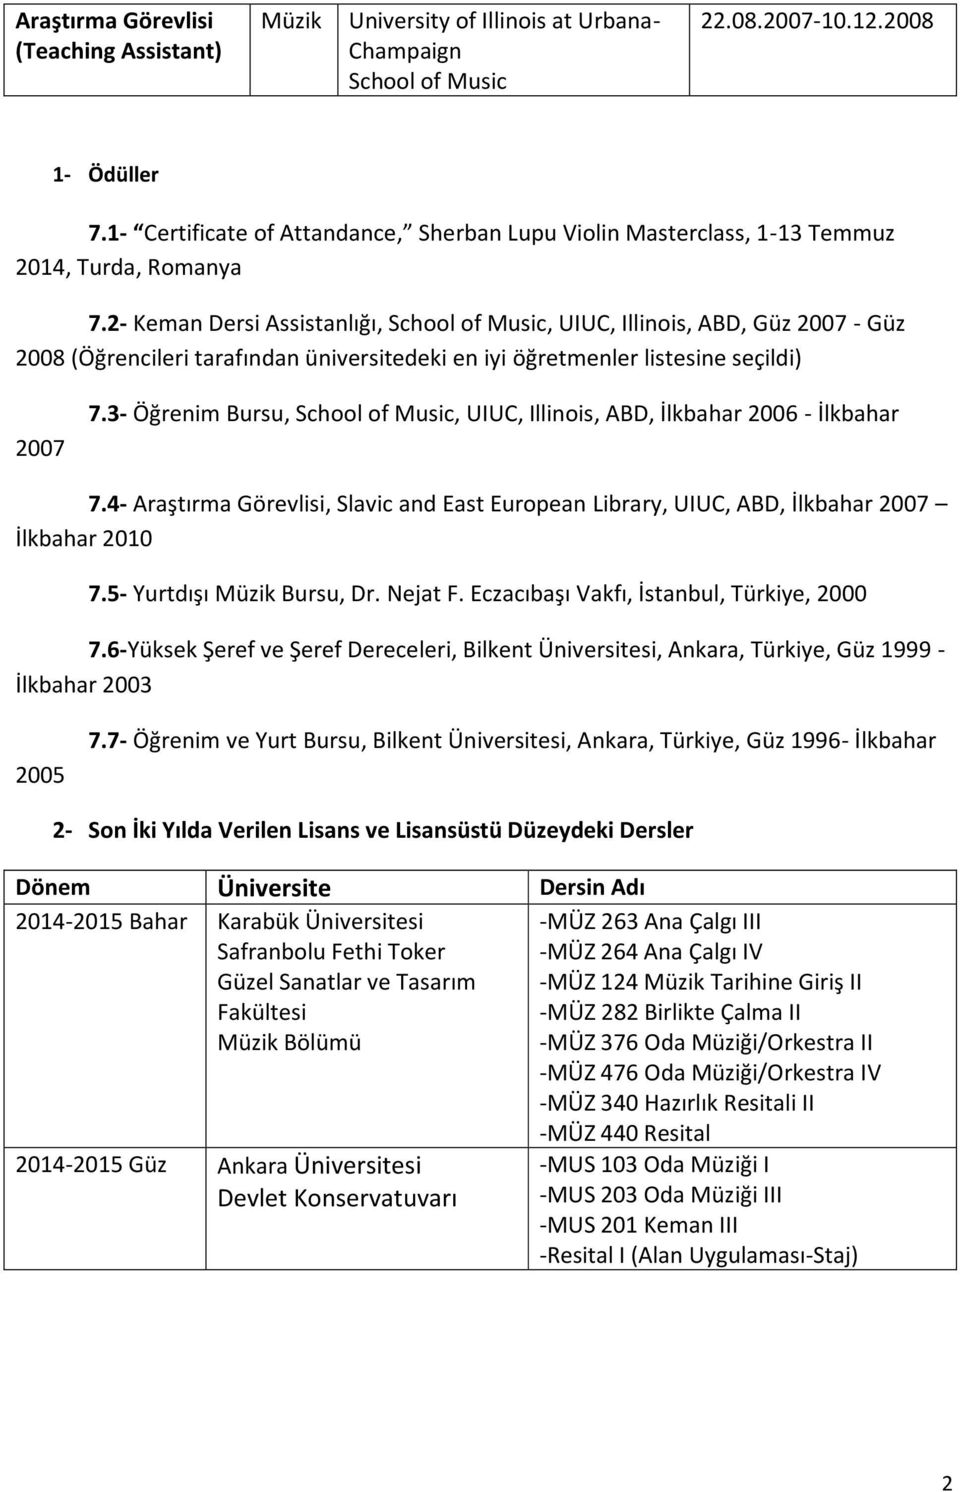 2- Keman Dersi Assistanlığı, School of Music, UIUC, Illinois, ABD, Güz 2007 - Güz 2008 (Öğrencileri tarafından üniversitedeki en iyi öğretmenler listesine seçildi) 2007 7.